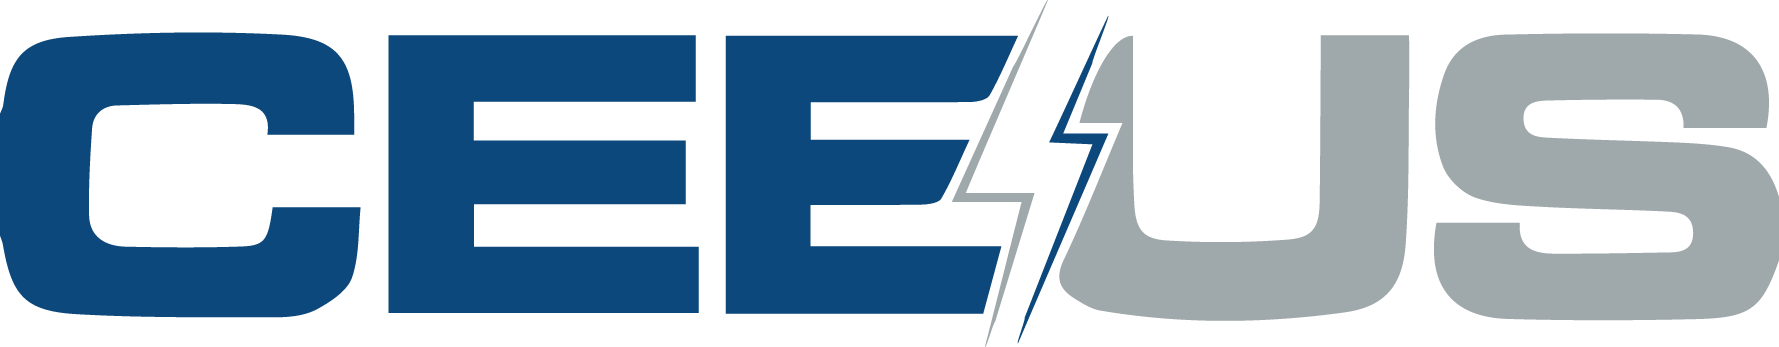 CEEUS logo